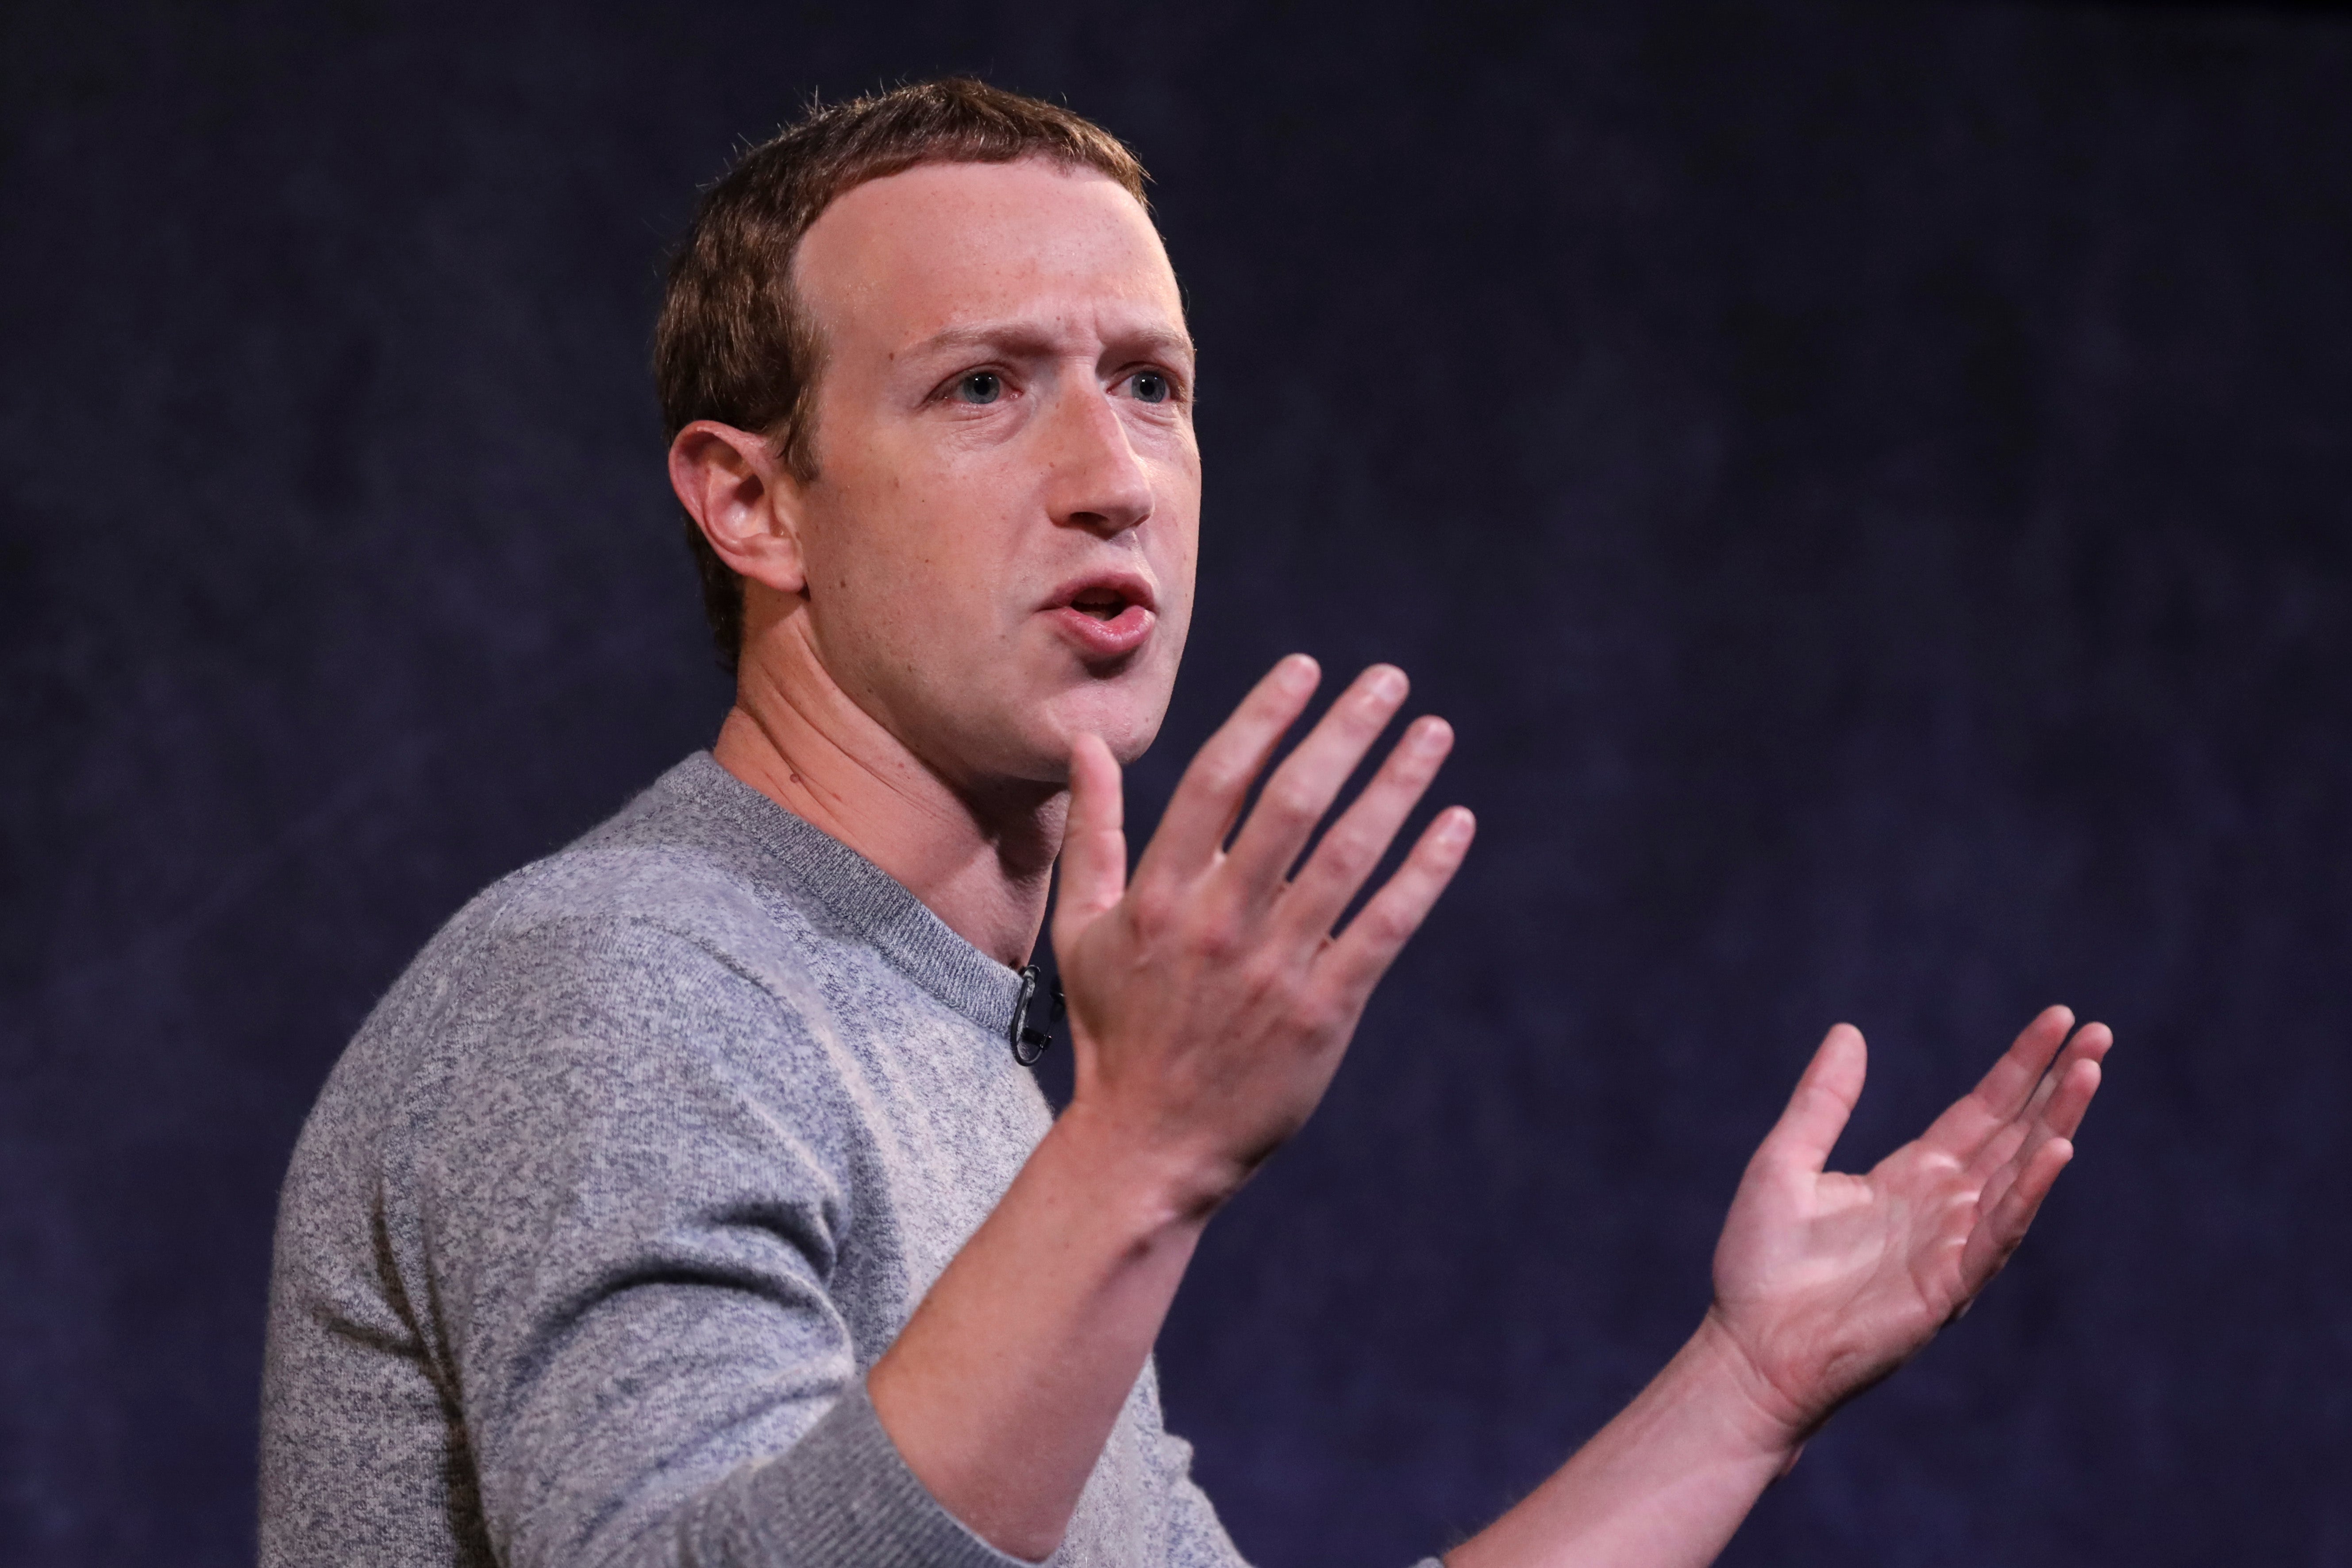 Censor or else: Democratic lawmakers warn Facebook not to ‘backslide’ on censorship